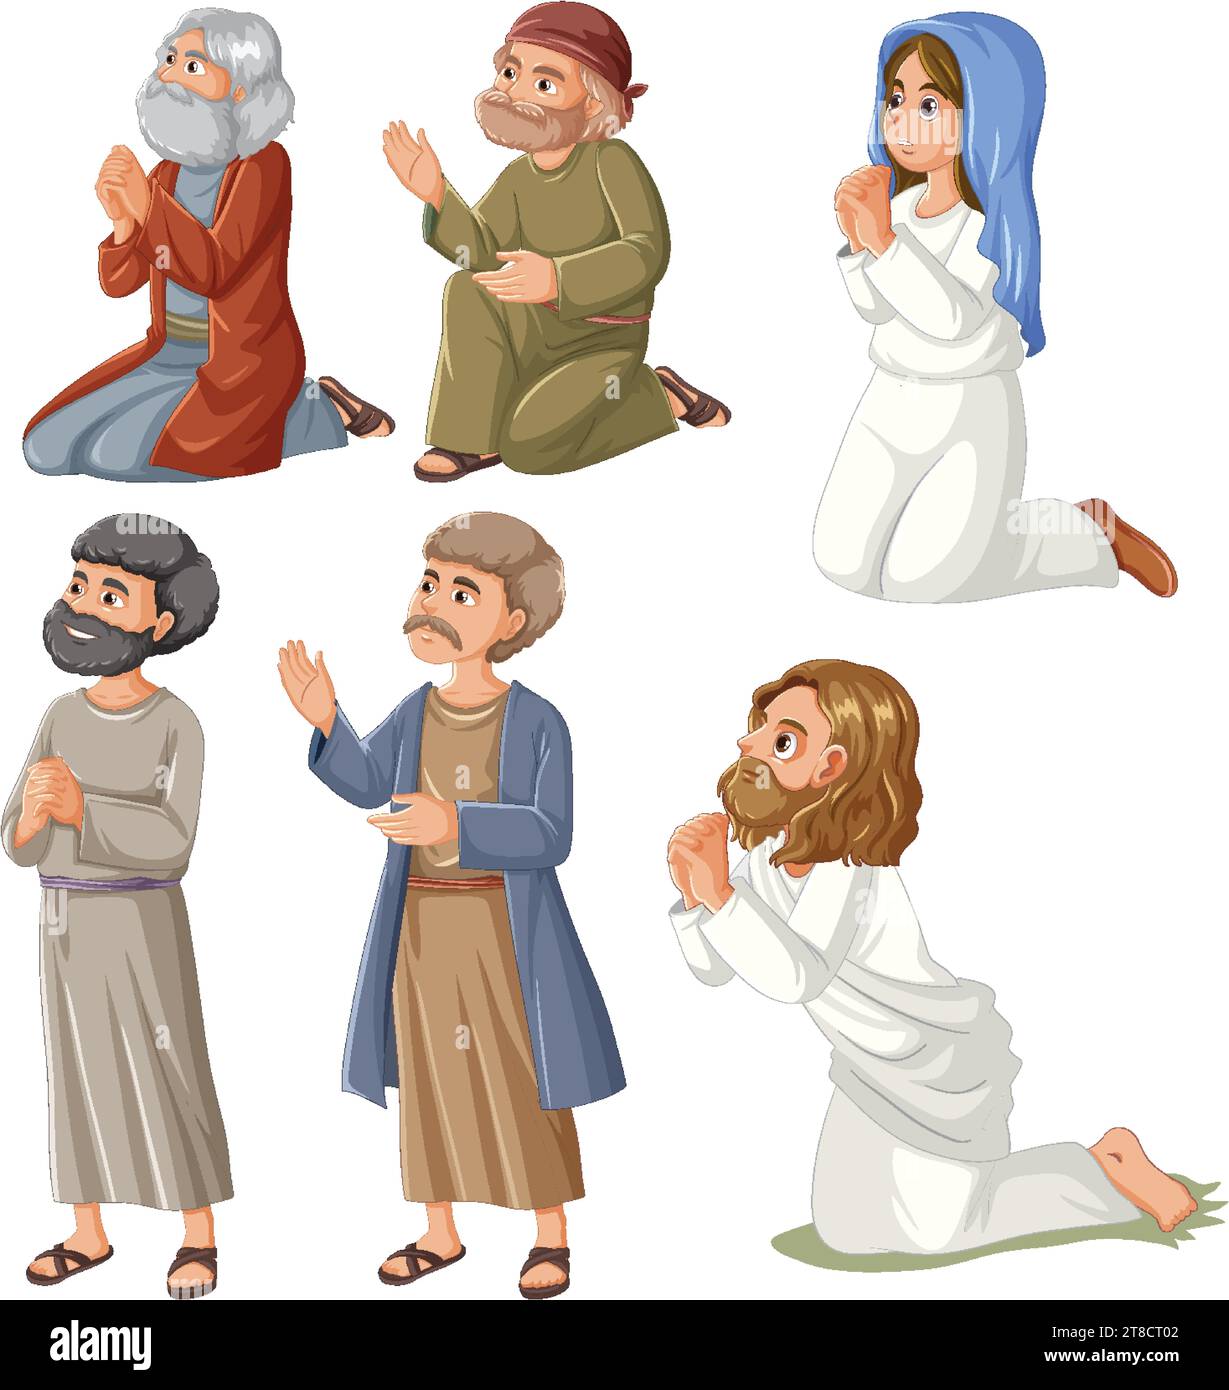 Des personnages de dessins animés vectoriels colorés représentent la naissance de Jésus dans cette illustration vivante Illustration de Vecteur